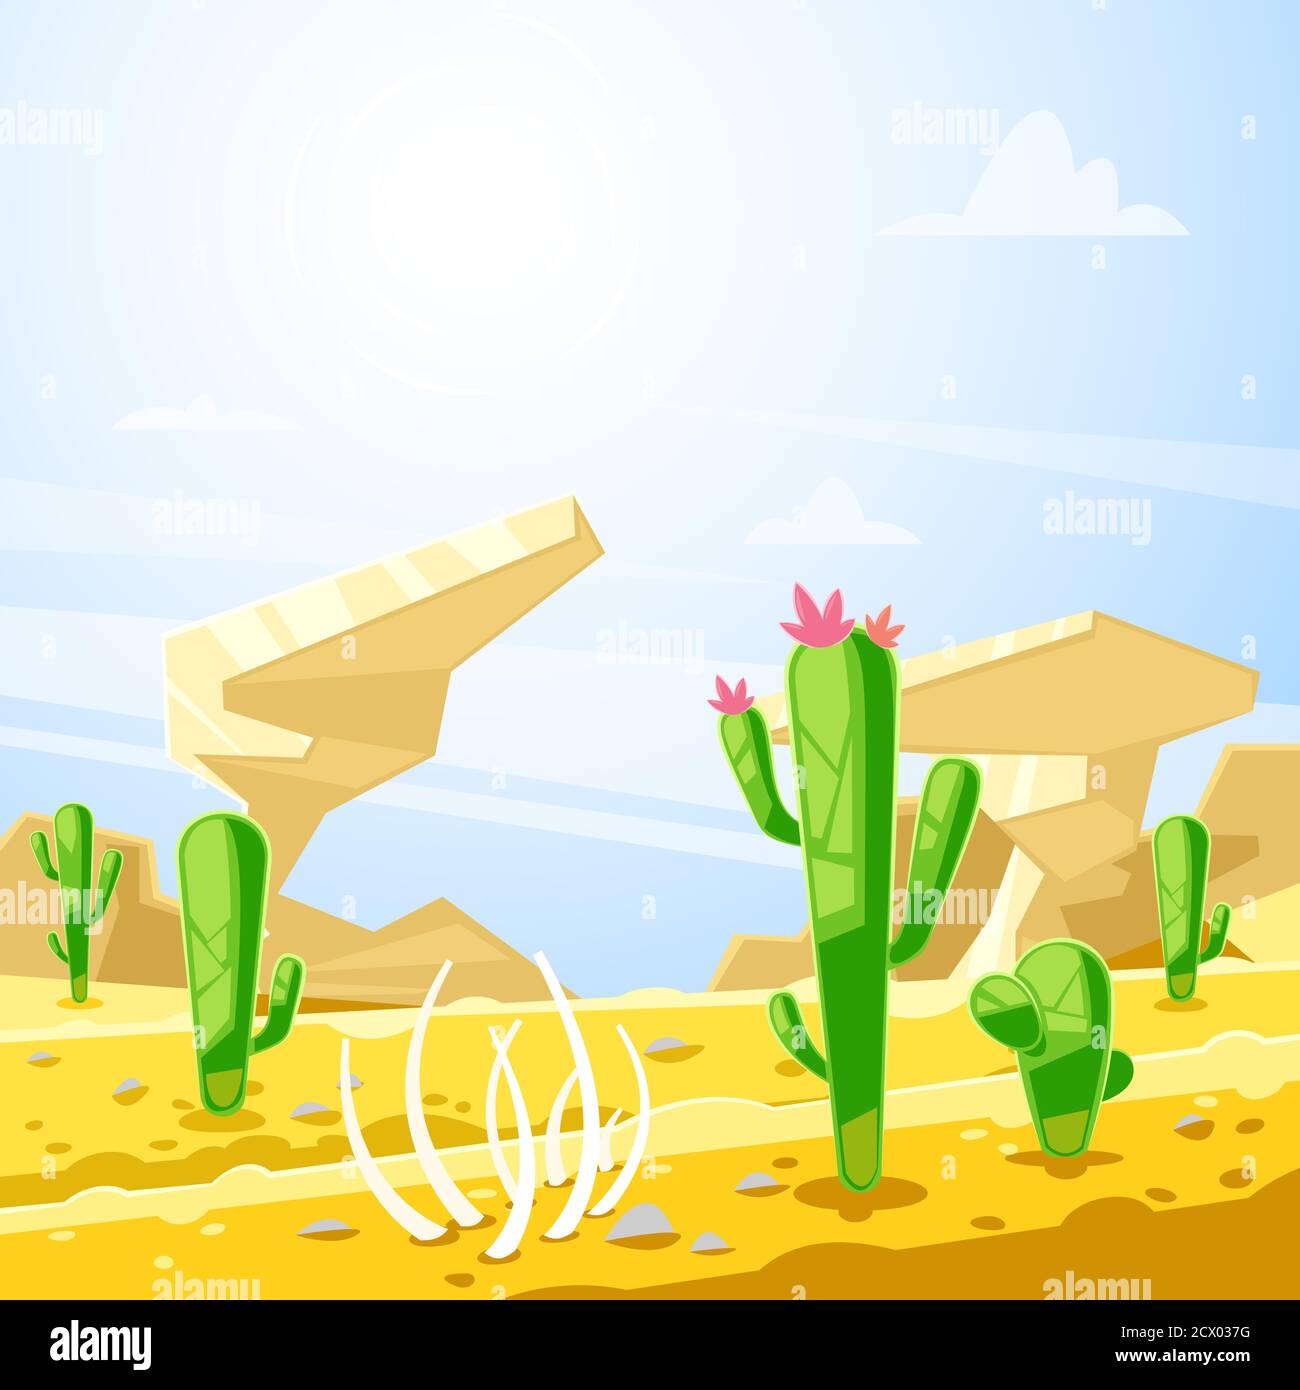 Wüstenlandschaft, Vektorgrafik. Kakteen, Felsen und Sanddünen Cartoon Hintergrund. Sommer Reise und Abenteuer Konzept. Stock Vektor